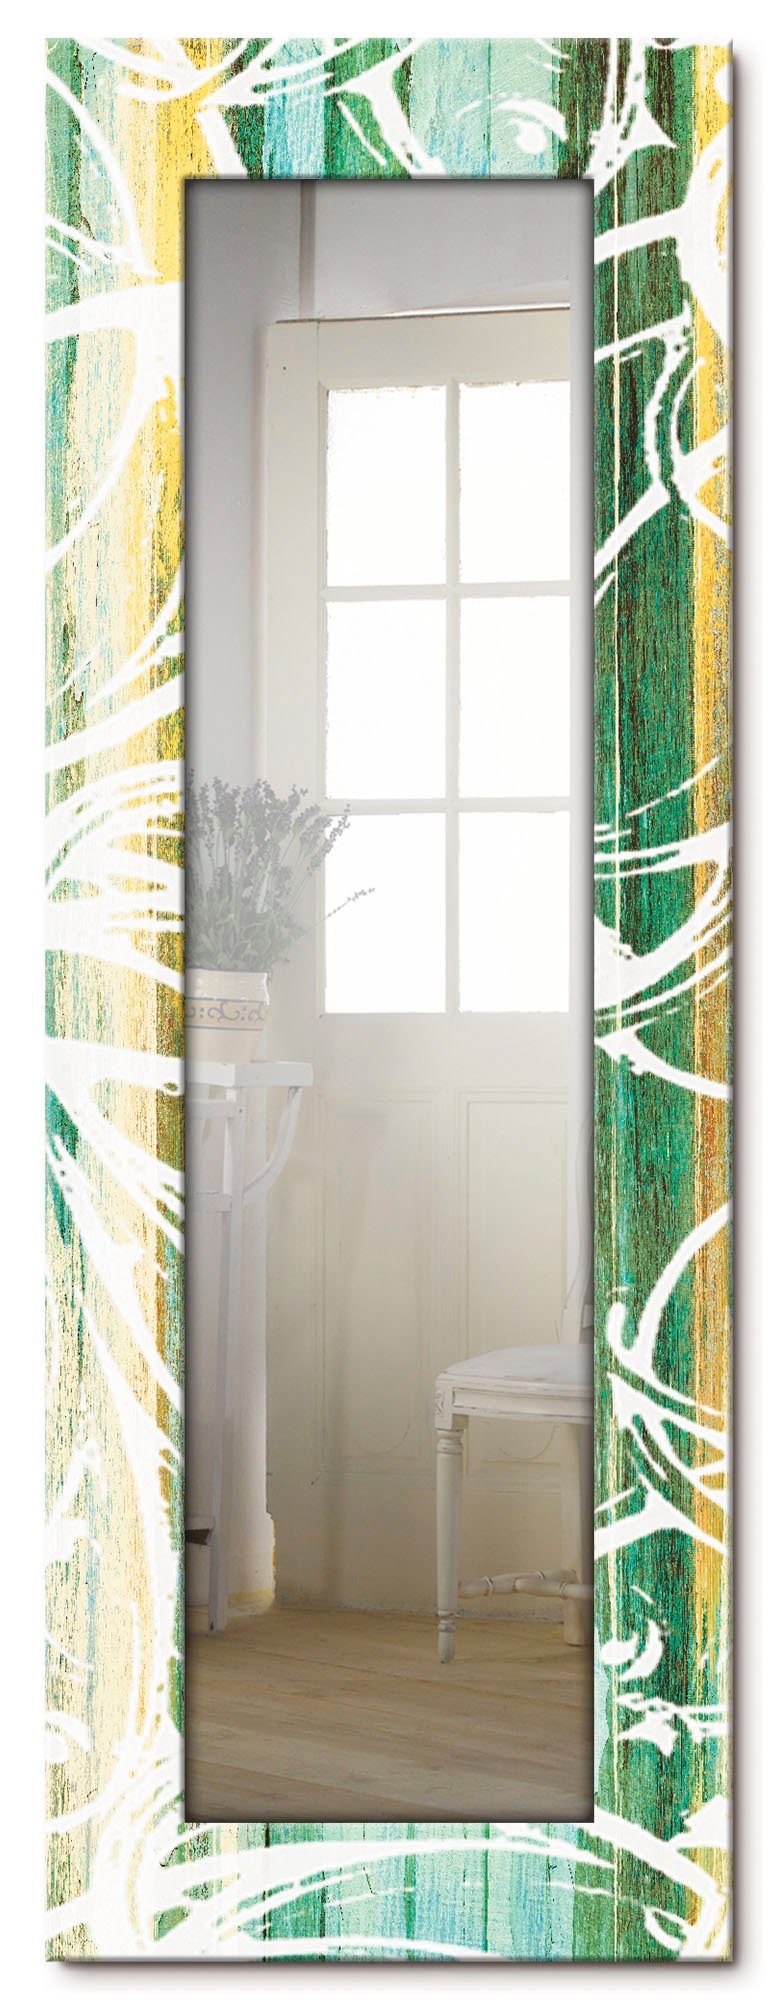 Artland Dekospiegel Ganzkörperspiegel, Landhaus modernen Stil, mit Wandspiegel, gerahmter Motivrahmen, Ornamente im